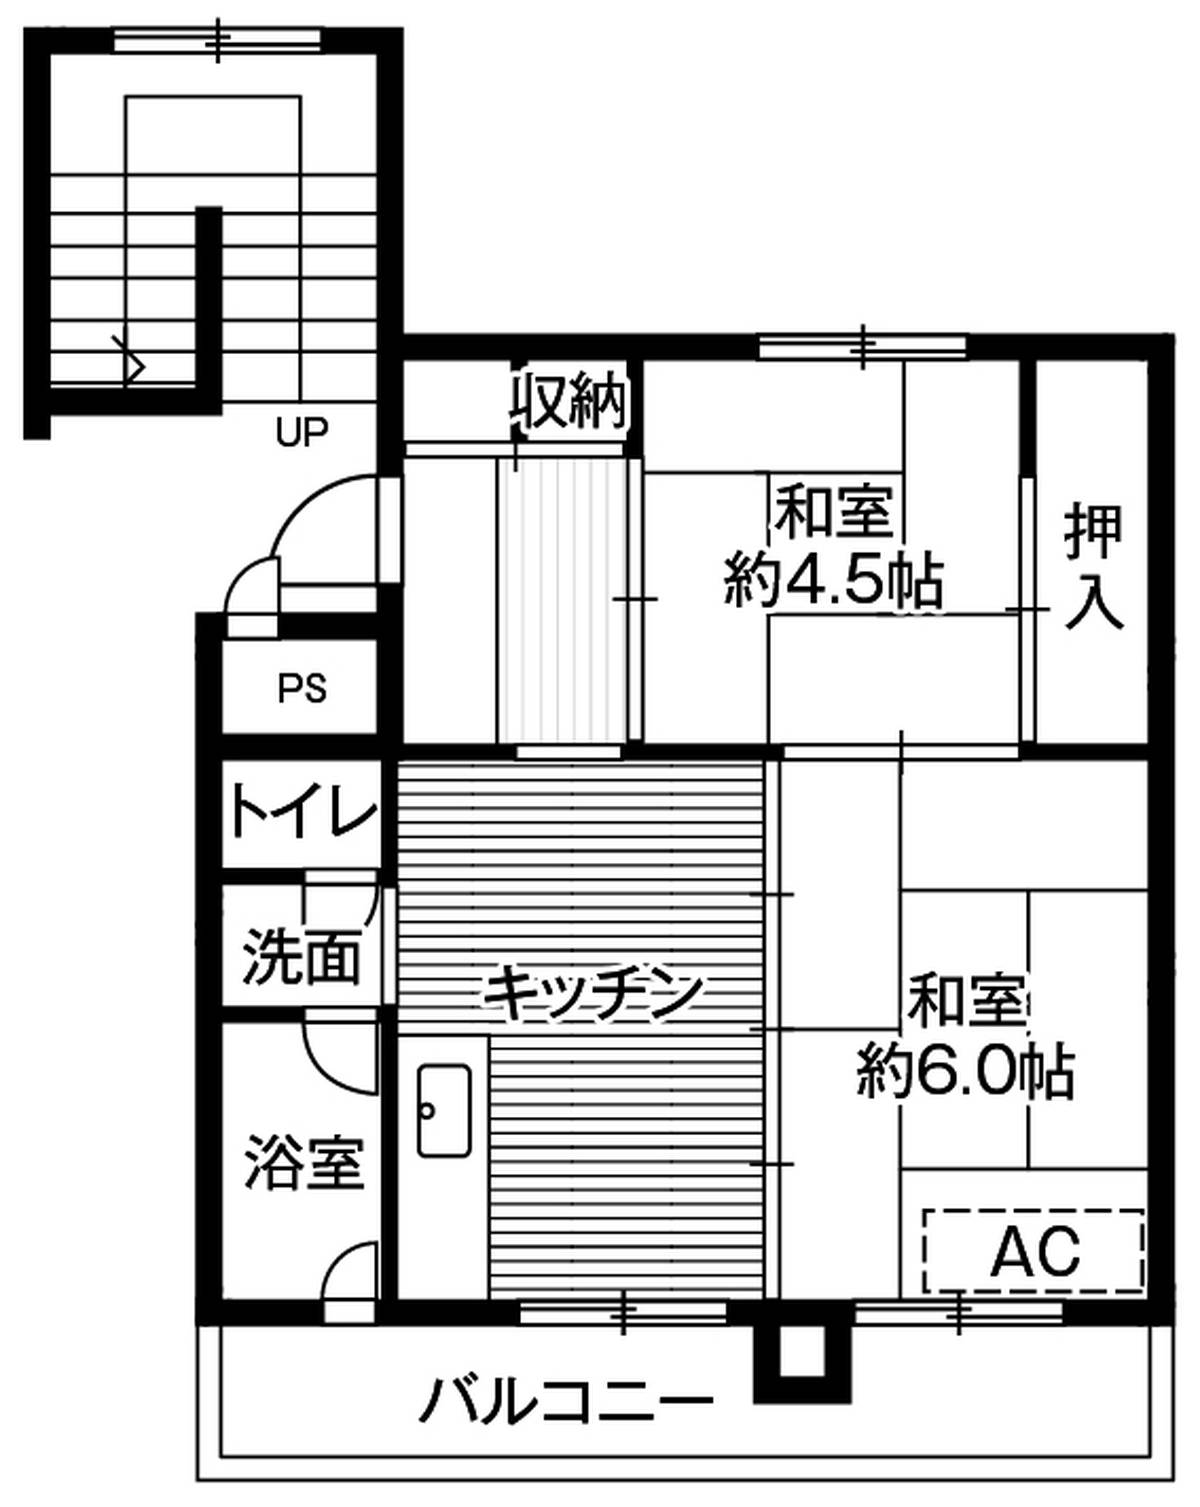 2DK floorplan of Village House Sunagawa in Sunagawa-shi